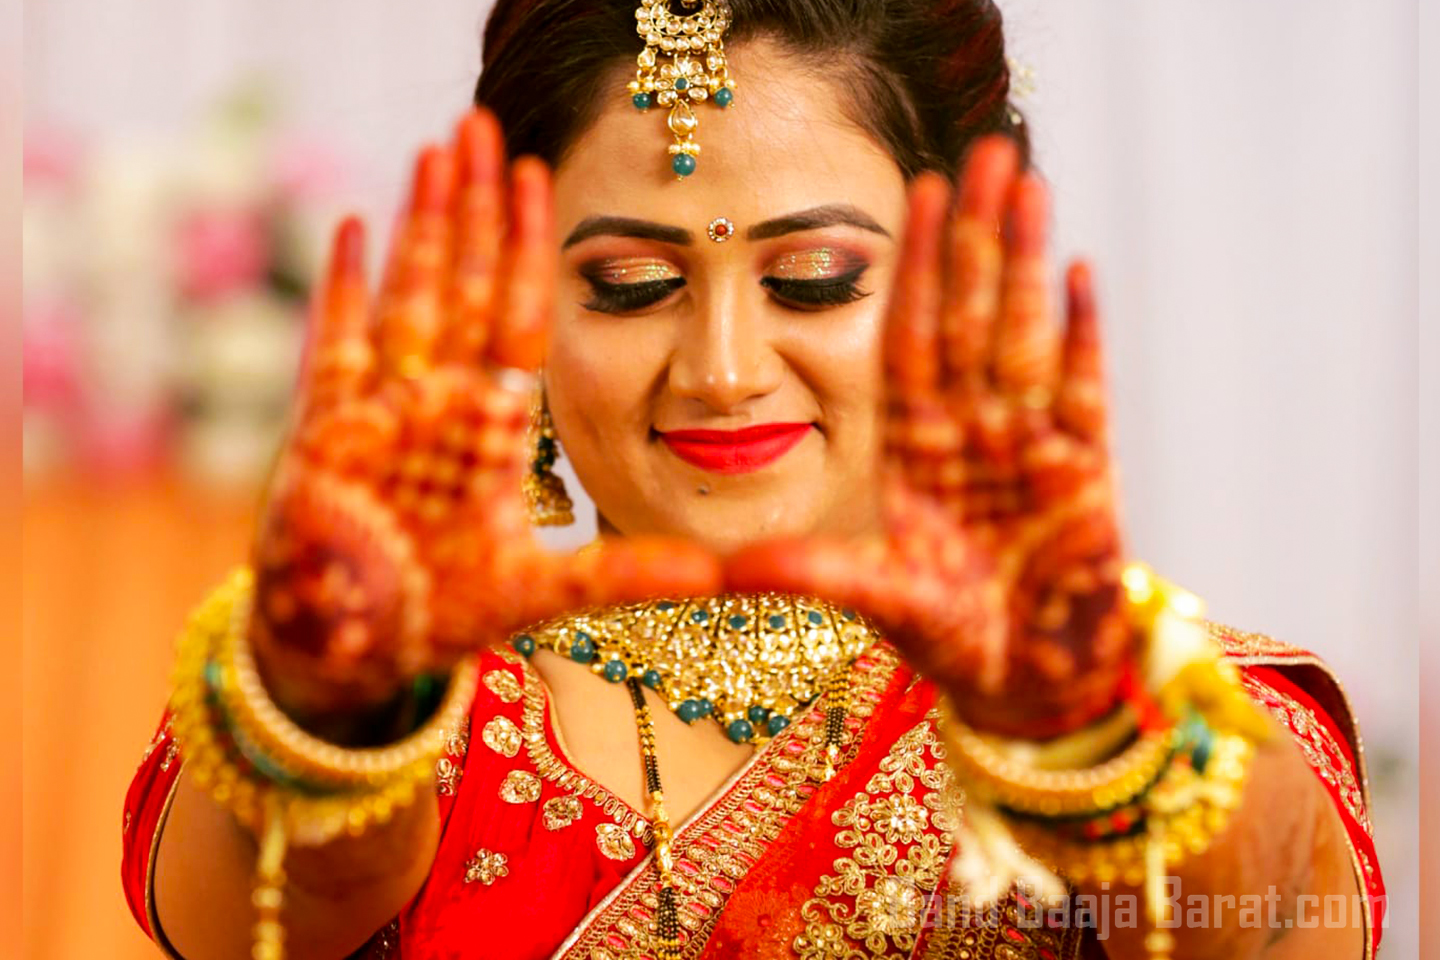 jyoti kesari makeup kandivali west mumbai